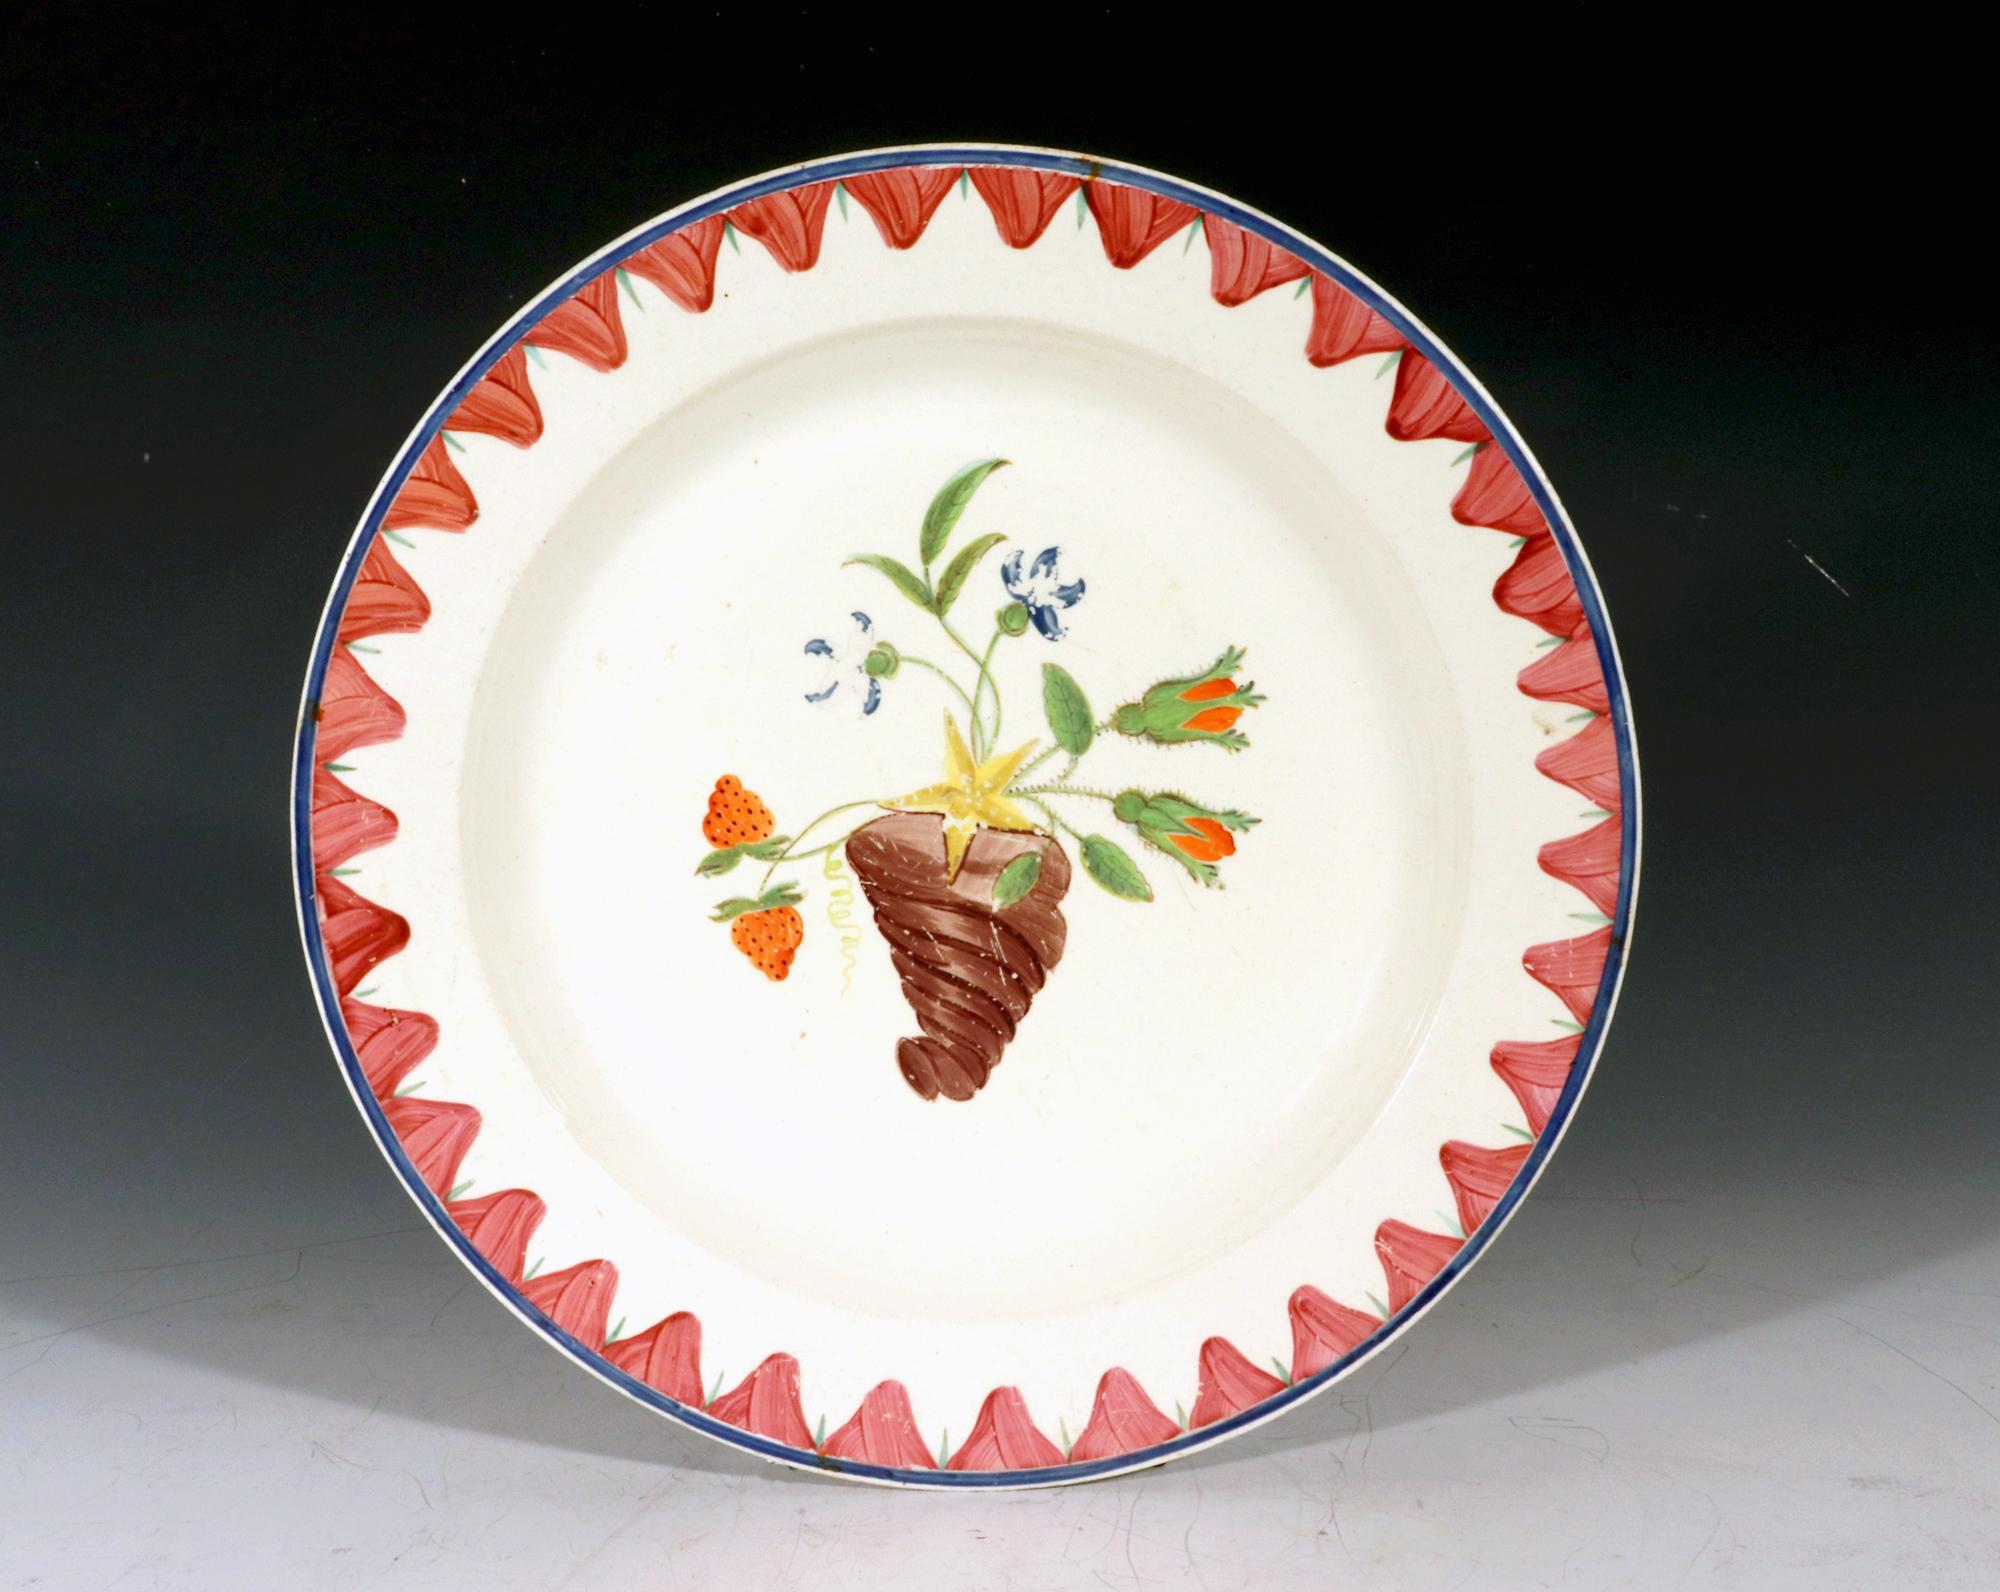 18. Jahrhundert Englisch Creamware gemalt Teller,
Ein Füllhorn von Blumen,
CIRCA-1800

Die runde, vermutlich außen verzierte Cremetafel ist mit einer Vase in Form eines Füllhorns mit Blumen und Blättern sowie einer Erdbeerpflanze in der Mitte des